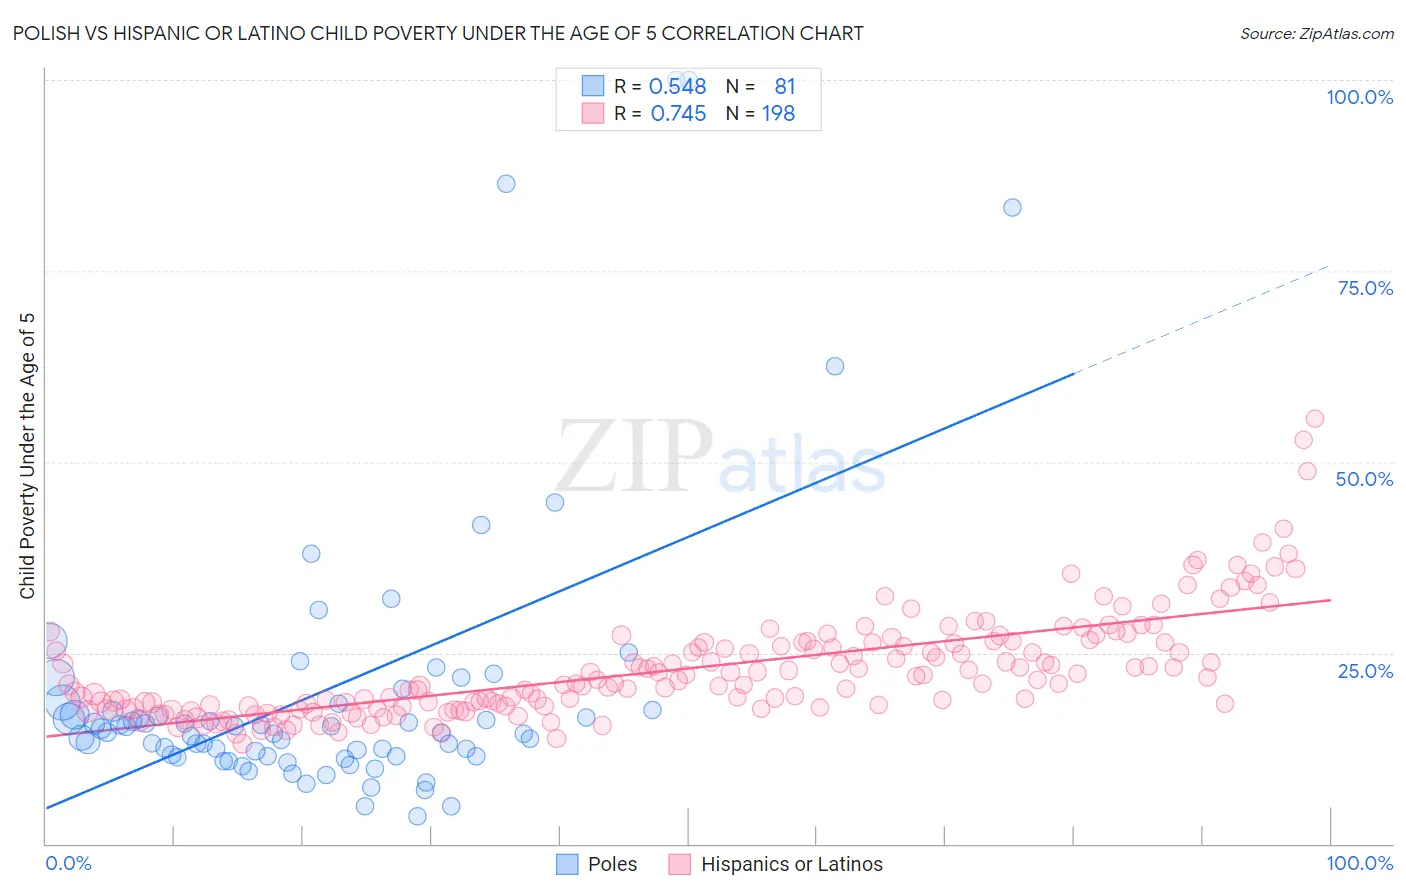 Polish vs Hispanic or Latino Child Poverty Under the Age of 5